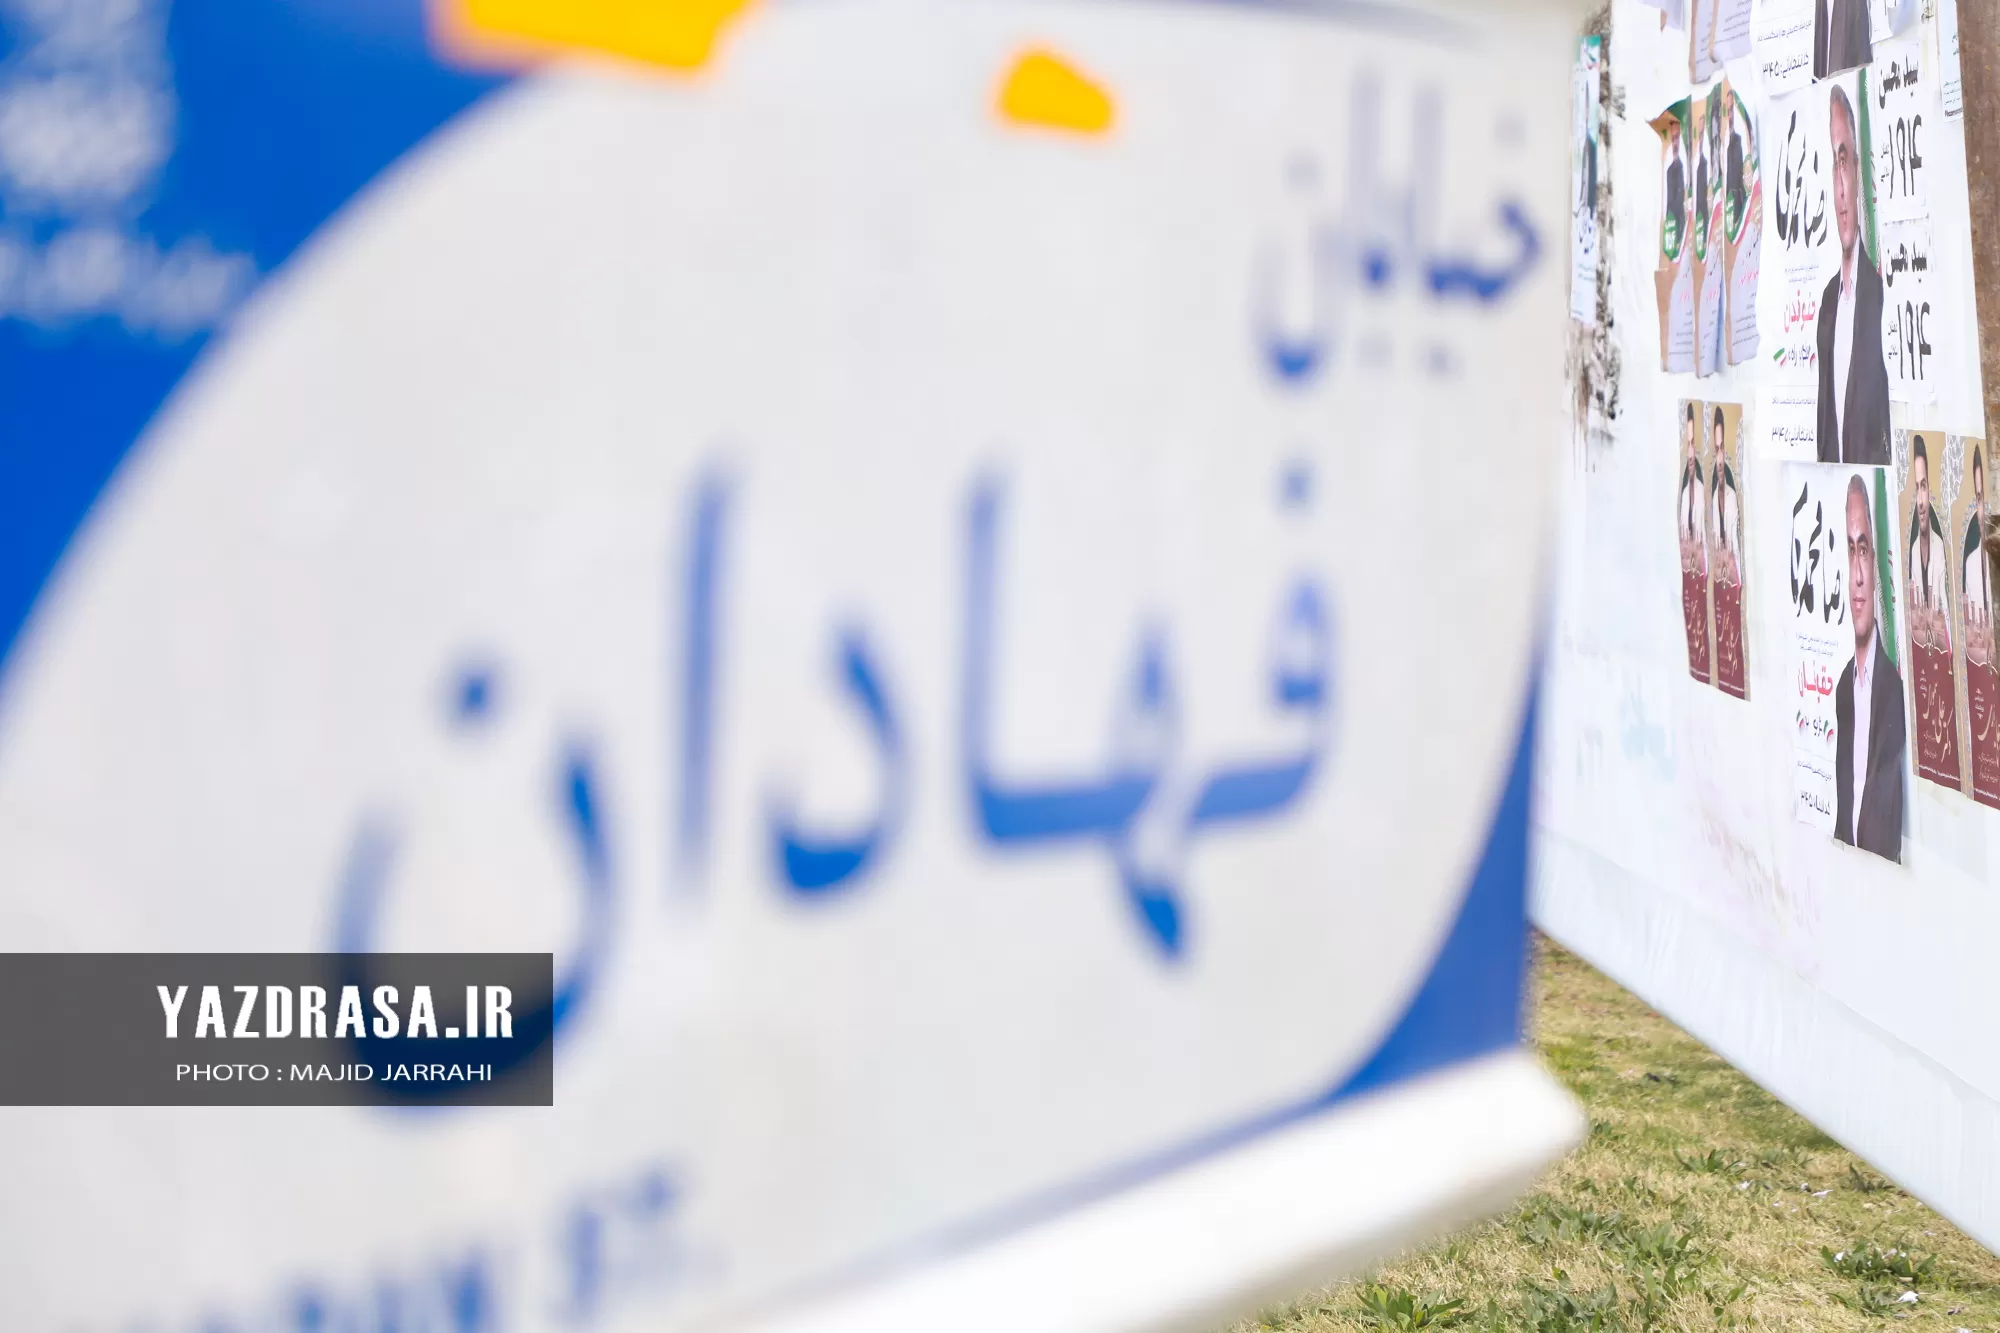 رخت تبلیغات انتخابات بر تن شهر یزد